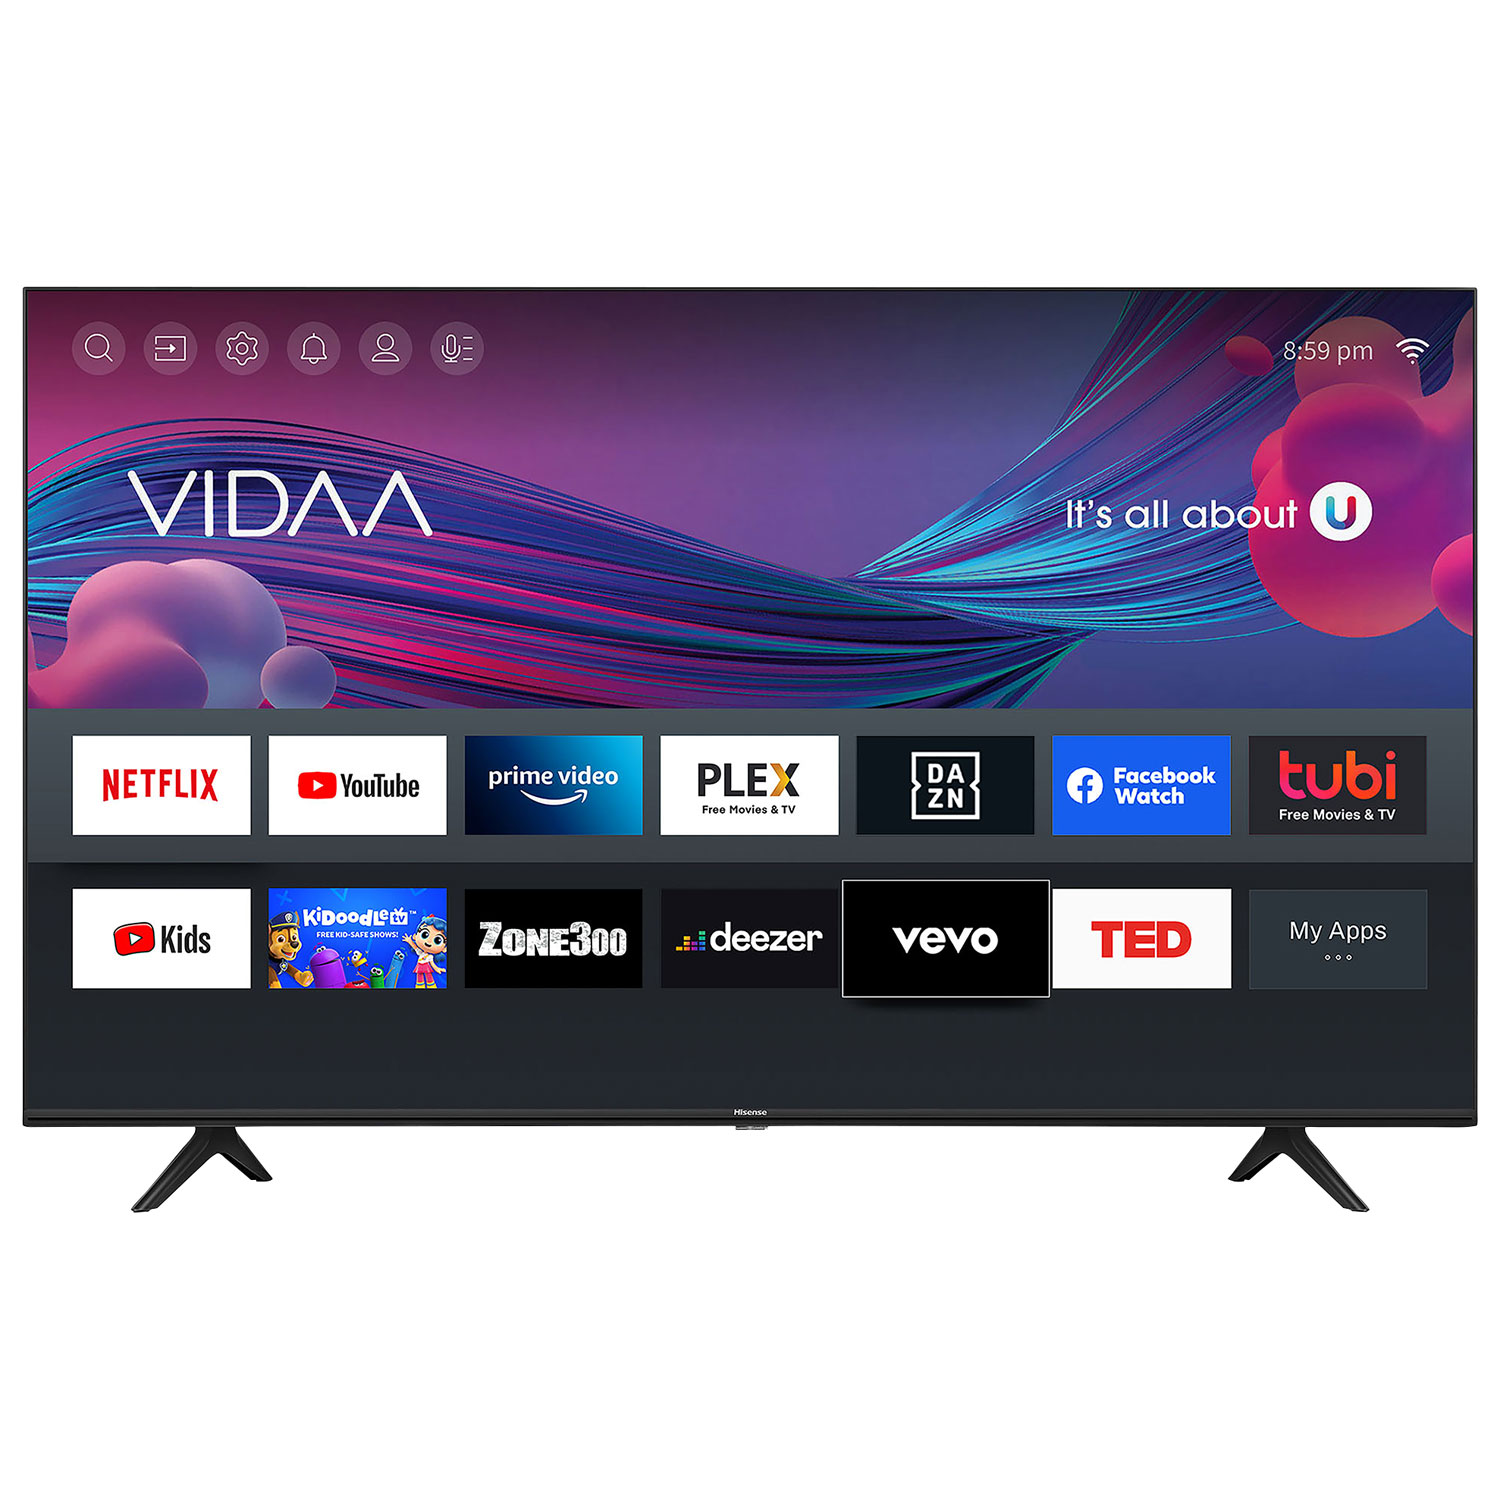 Hisense 40" 1080p HD LCD Vidaa Smart TV (40H55G) - 2021